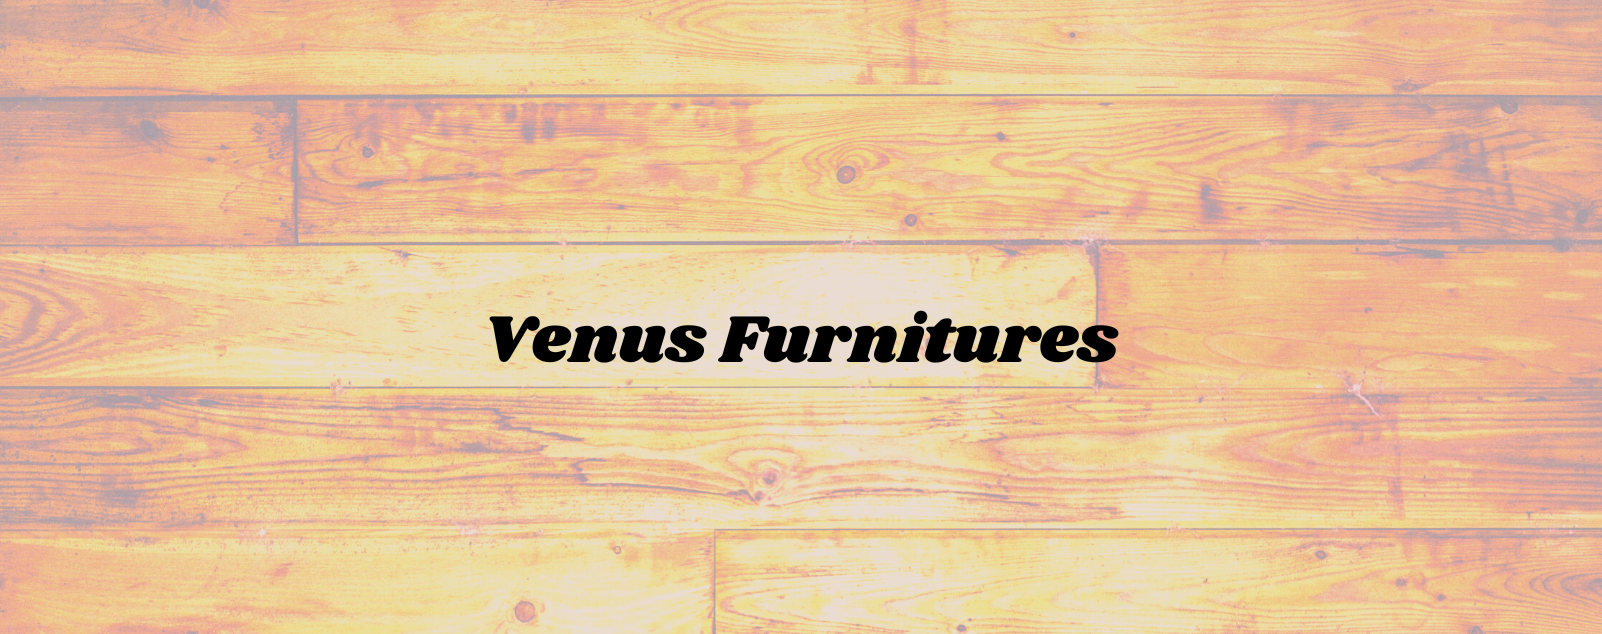 Venus Furnitures